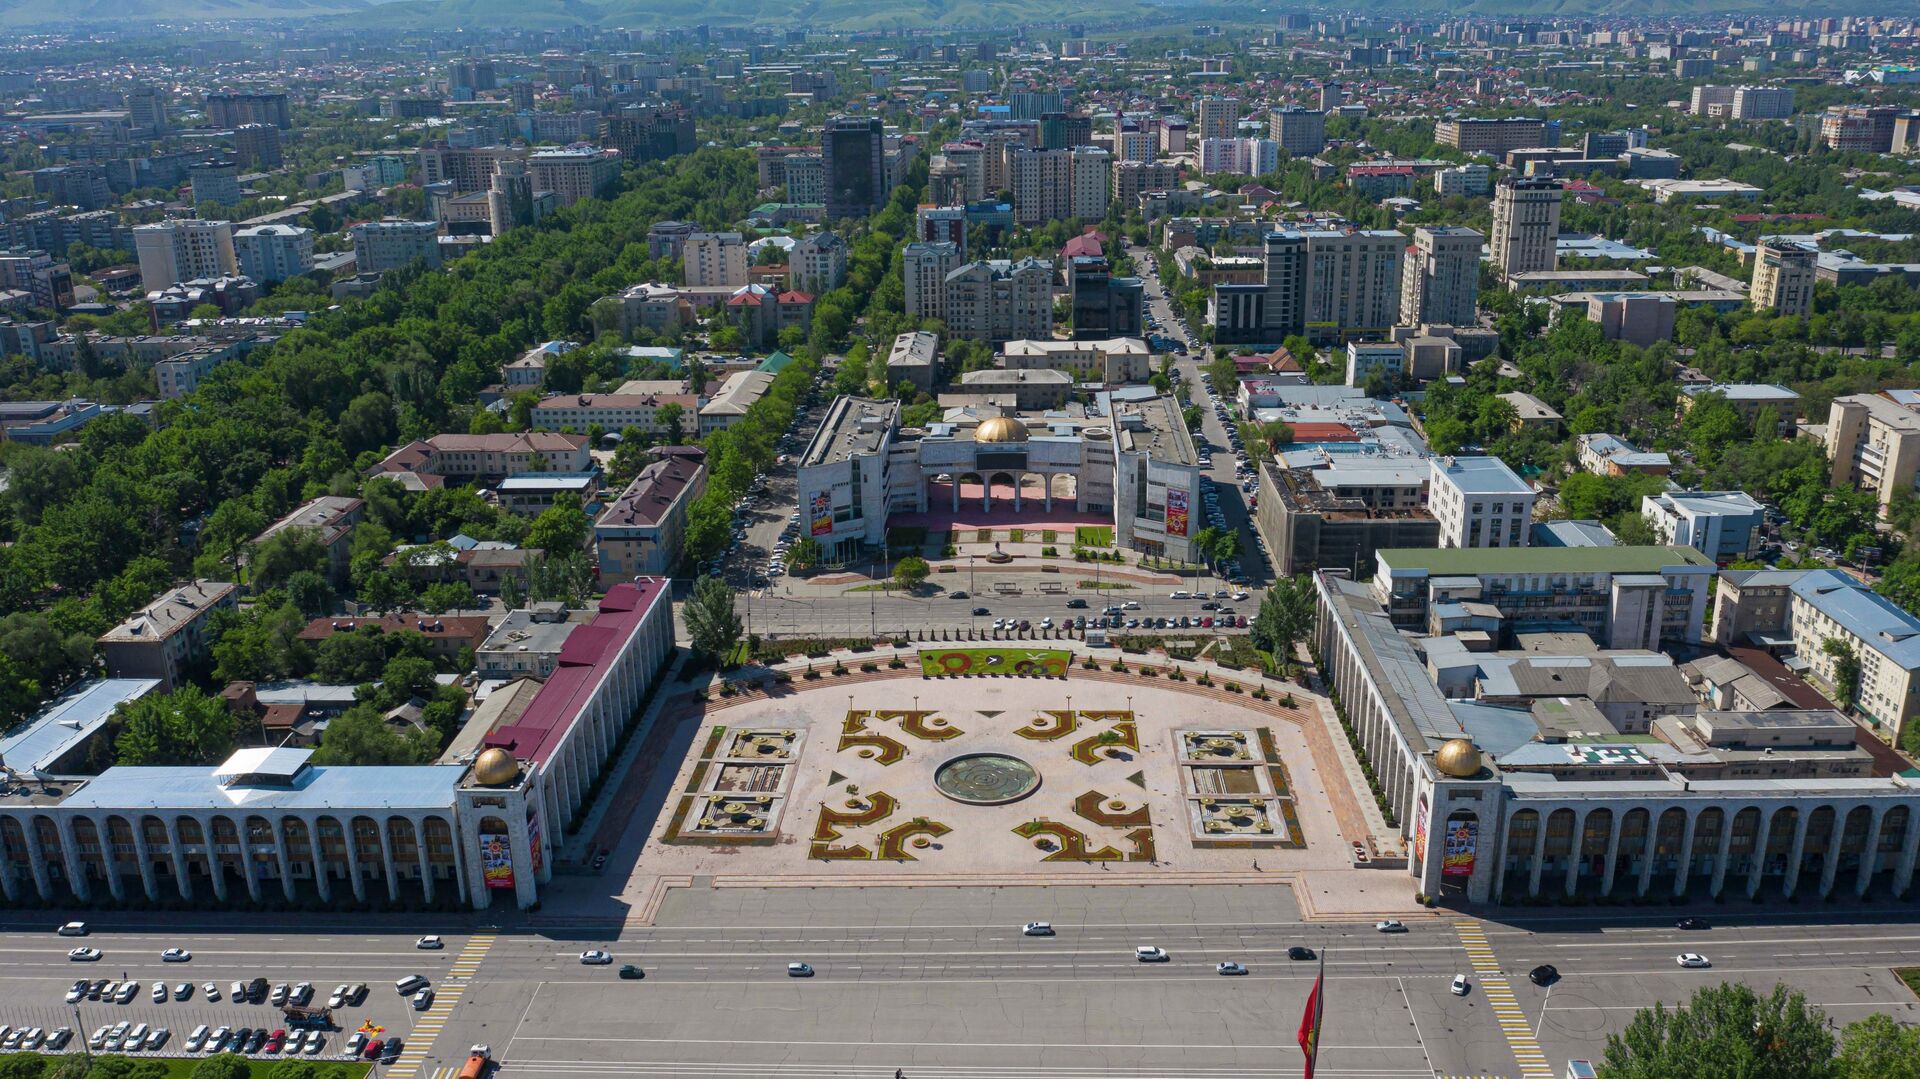 Кыргызстан ужесточил правила въезда и пребывания туристов